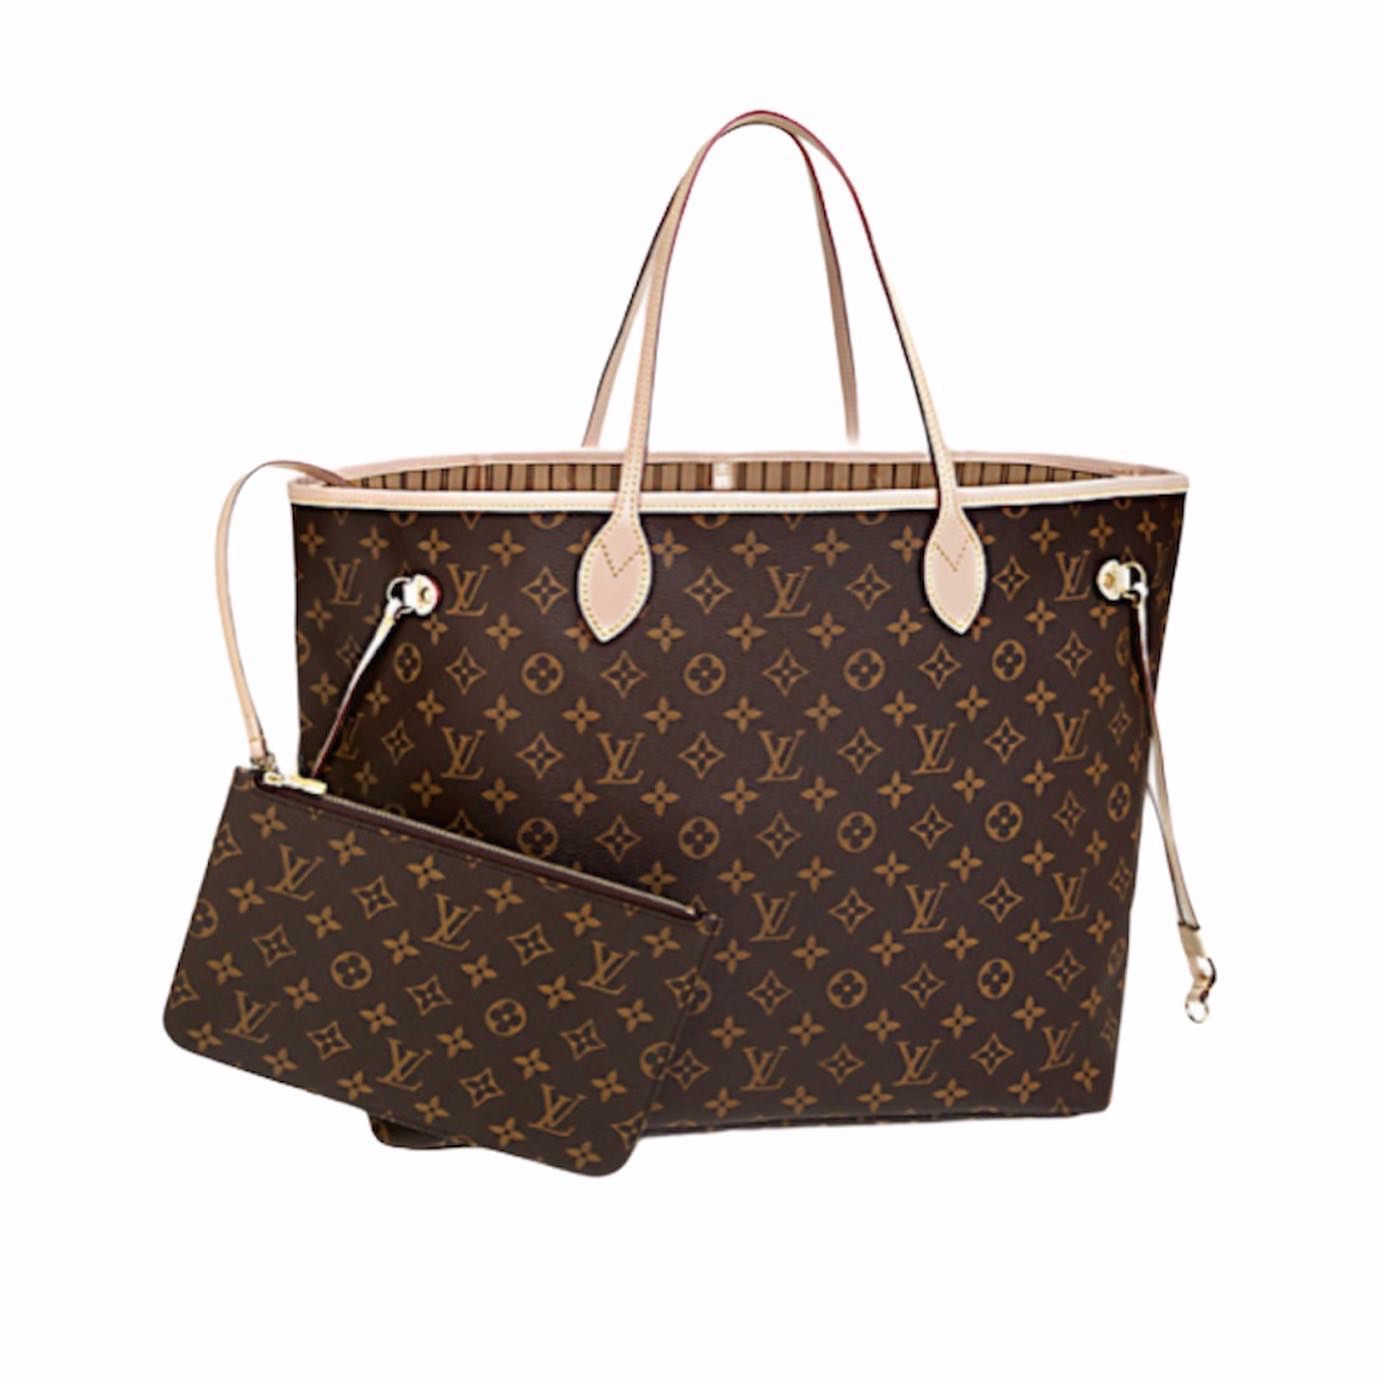 Checkered Leather Neverfull handbag for women